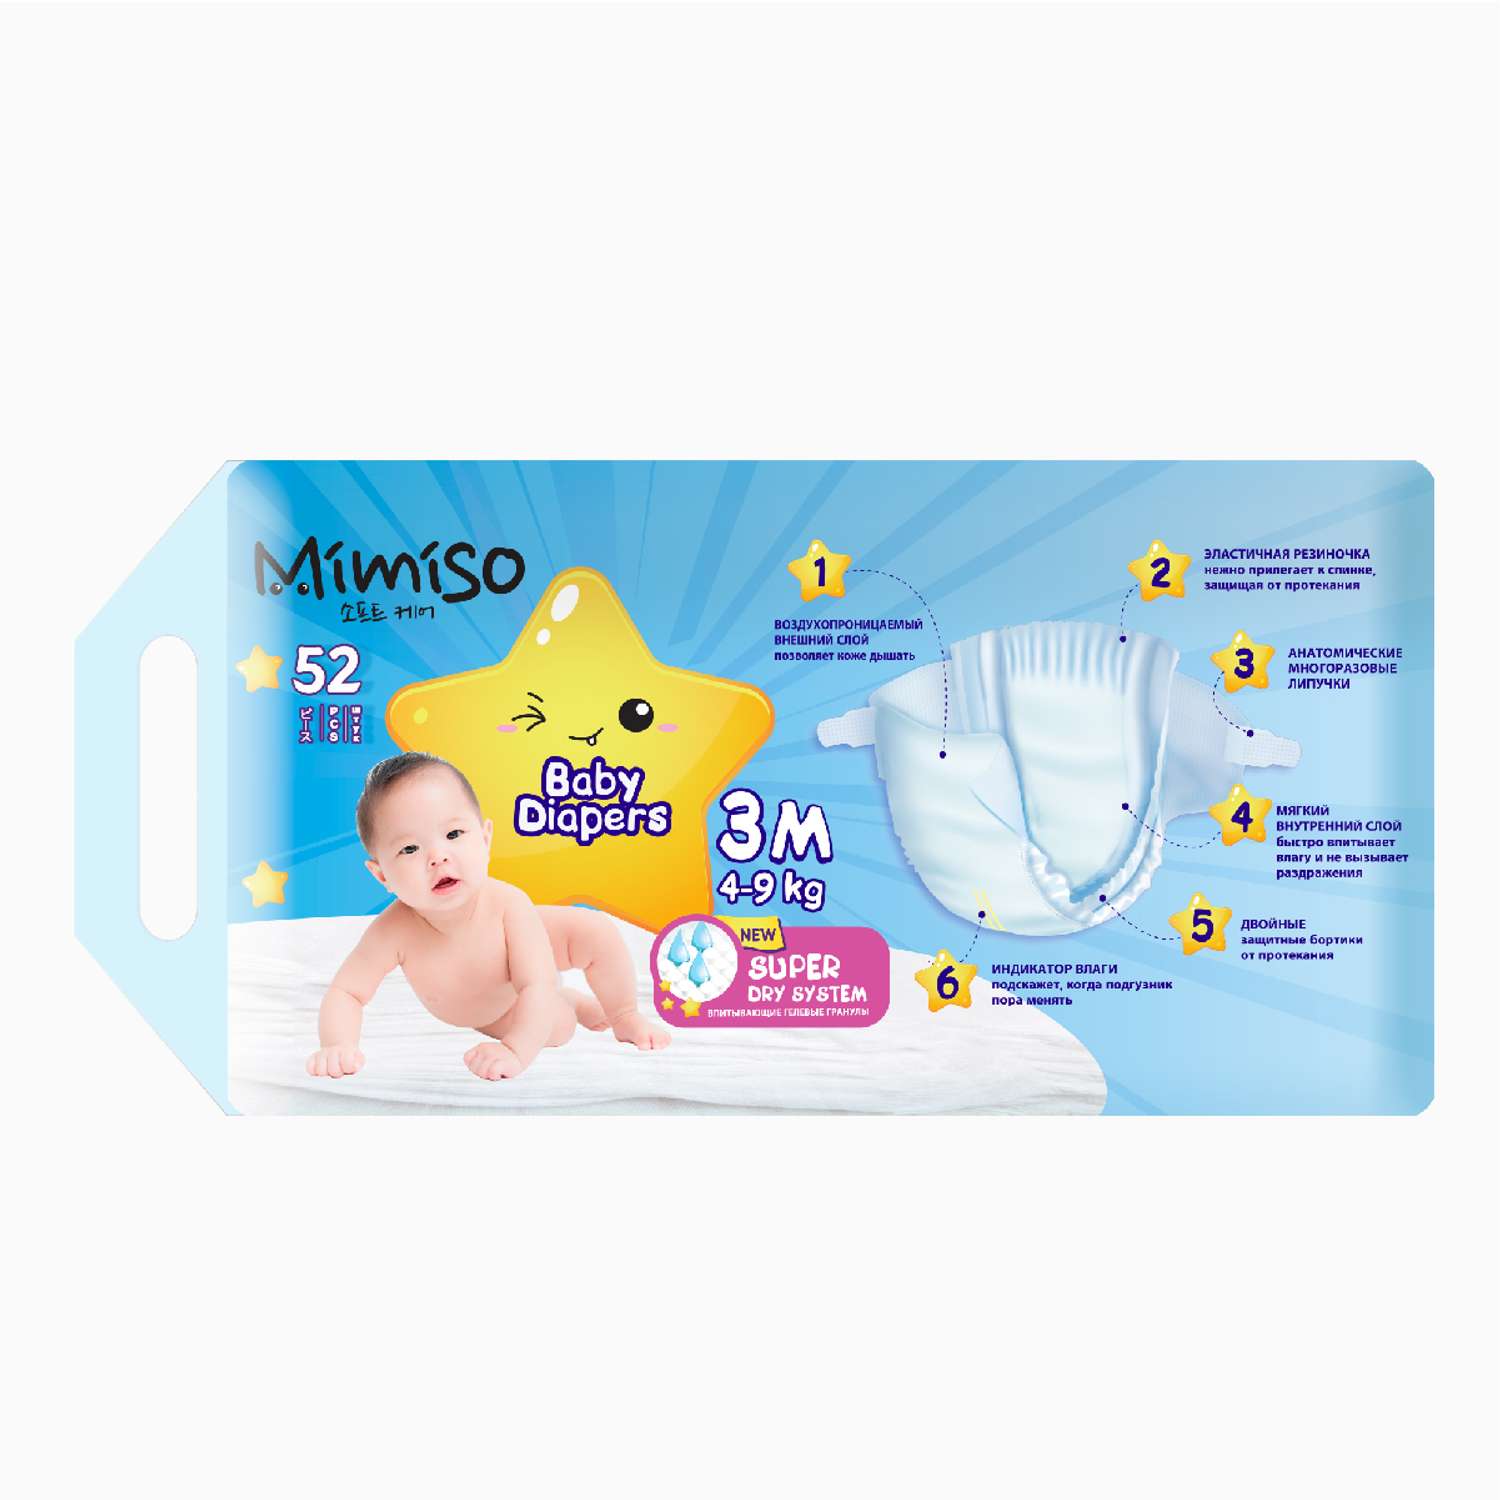 Подгузники Mimiso одноразовые для детей 3/М 4-9 кг 52шт - фото 3